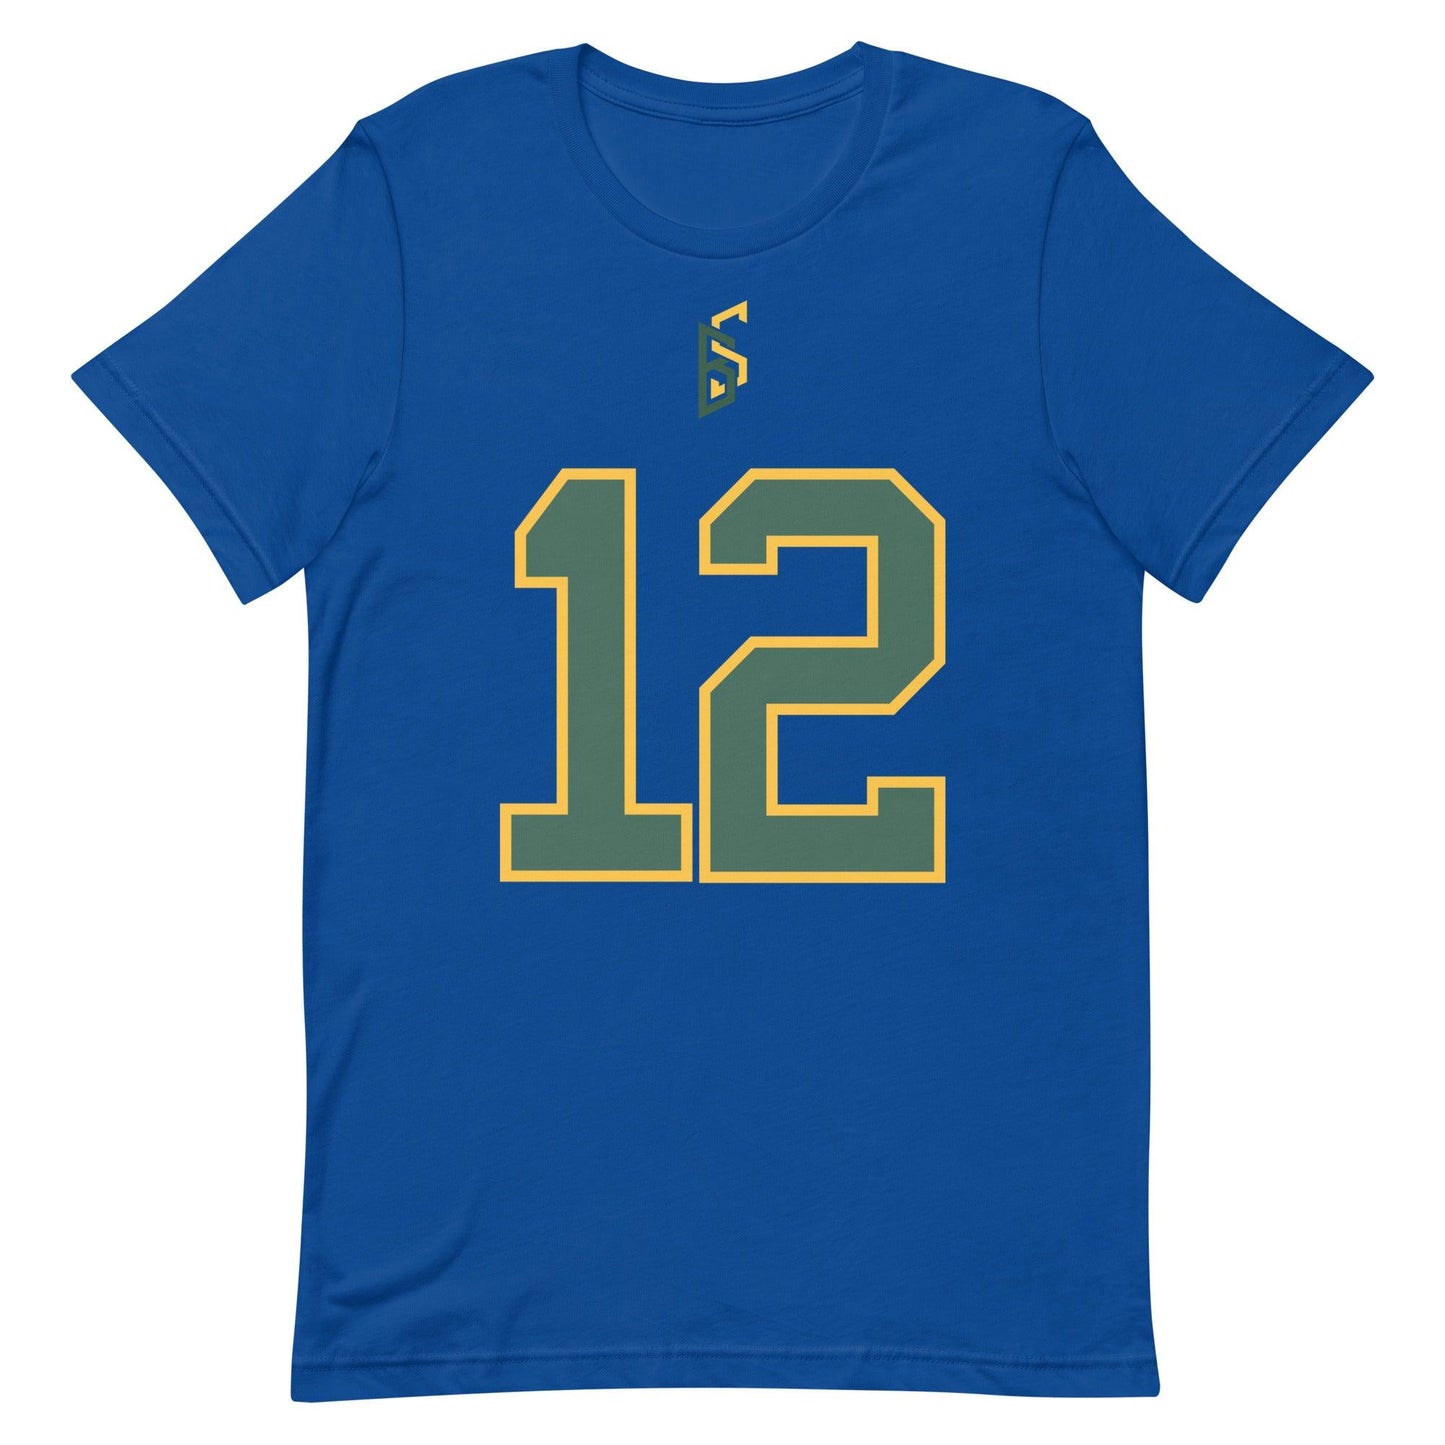 Blake Shapen "Jersey" t-shirt - Fan Arch